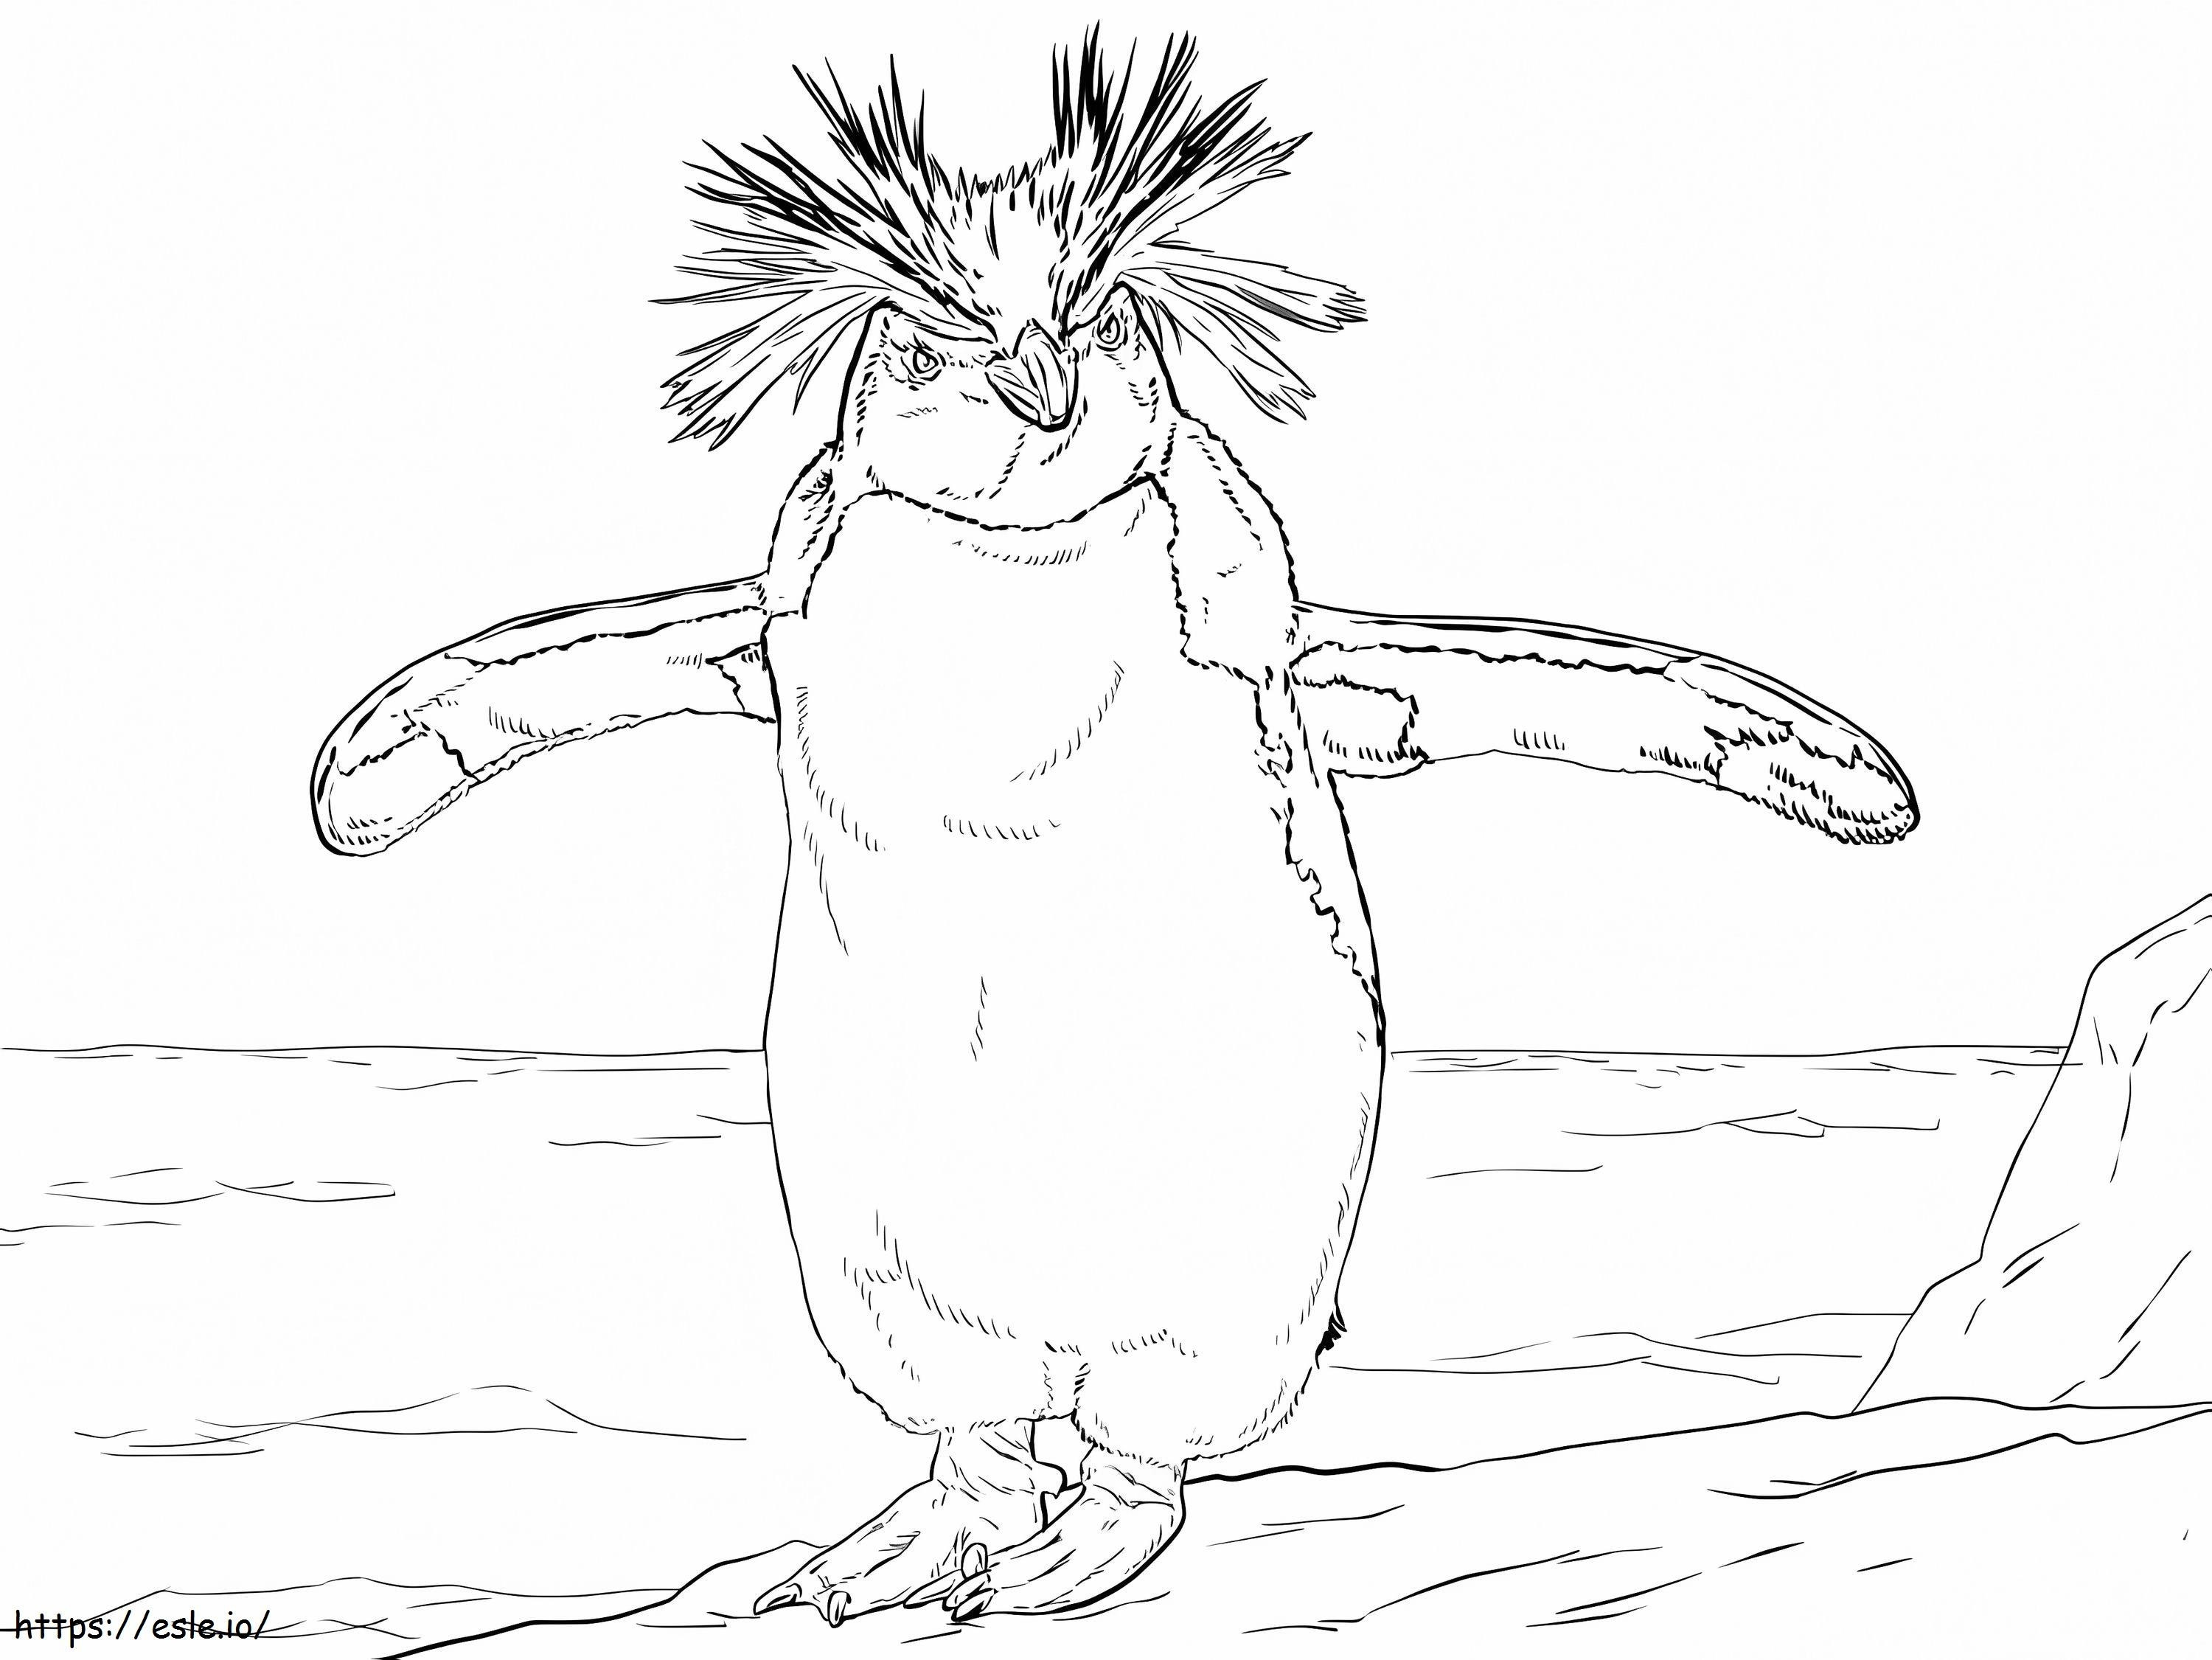 Pinguim Rockhopper do Norte para colorir